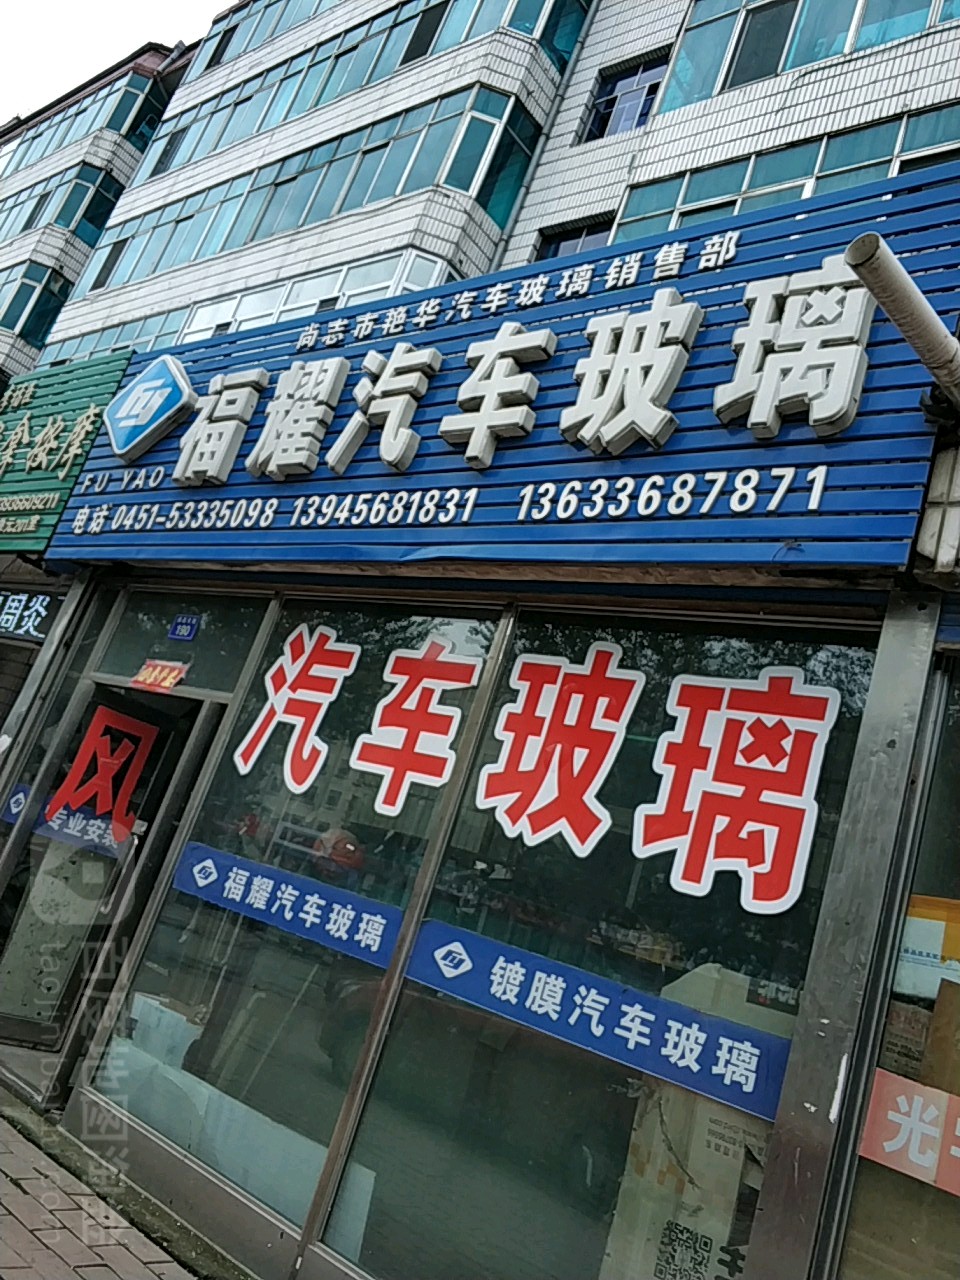 福耀汽车玻璃店(尚志市科学技术与信息产业局东南)